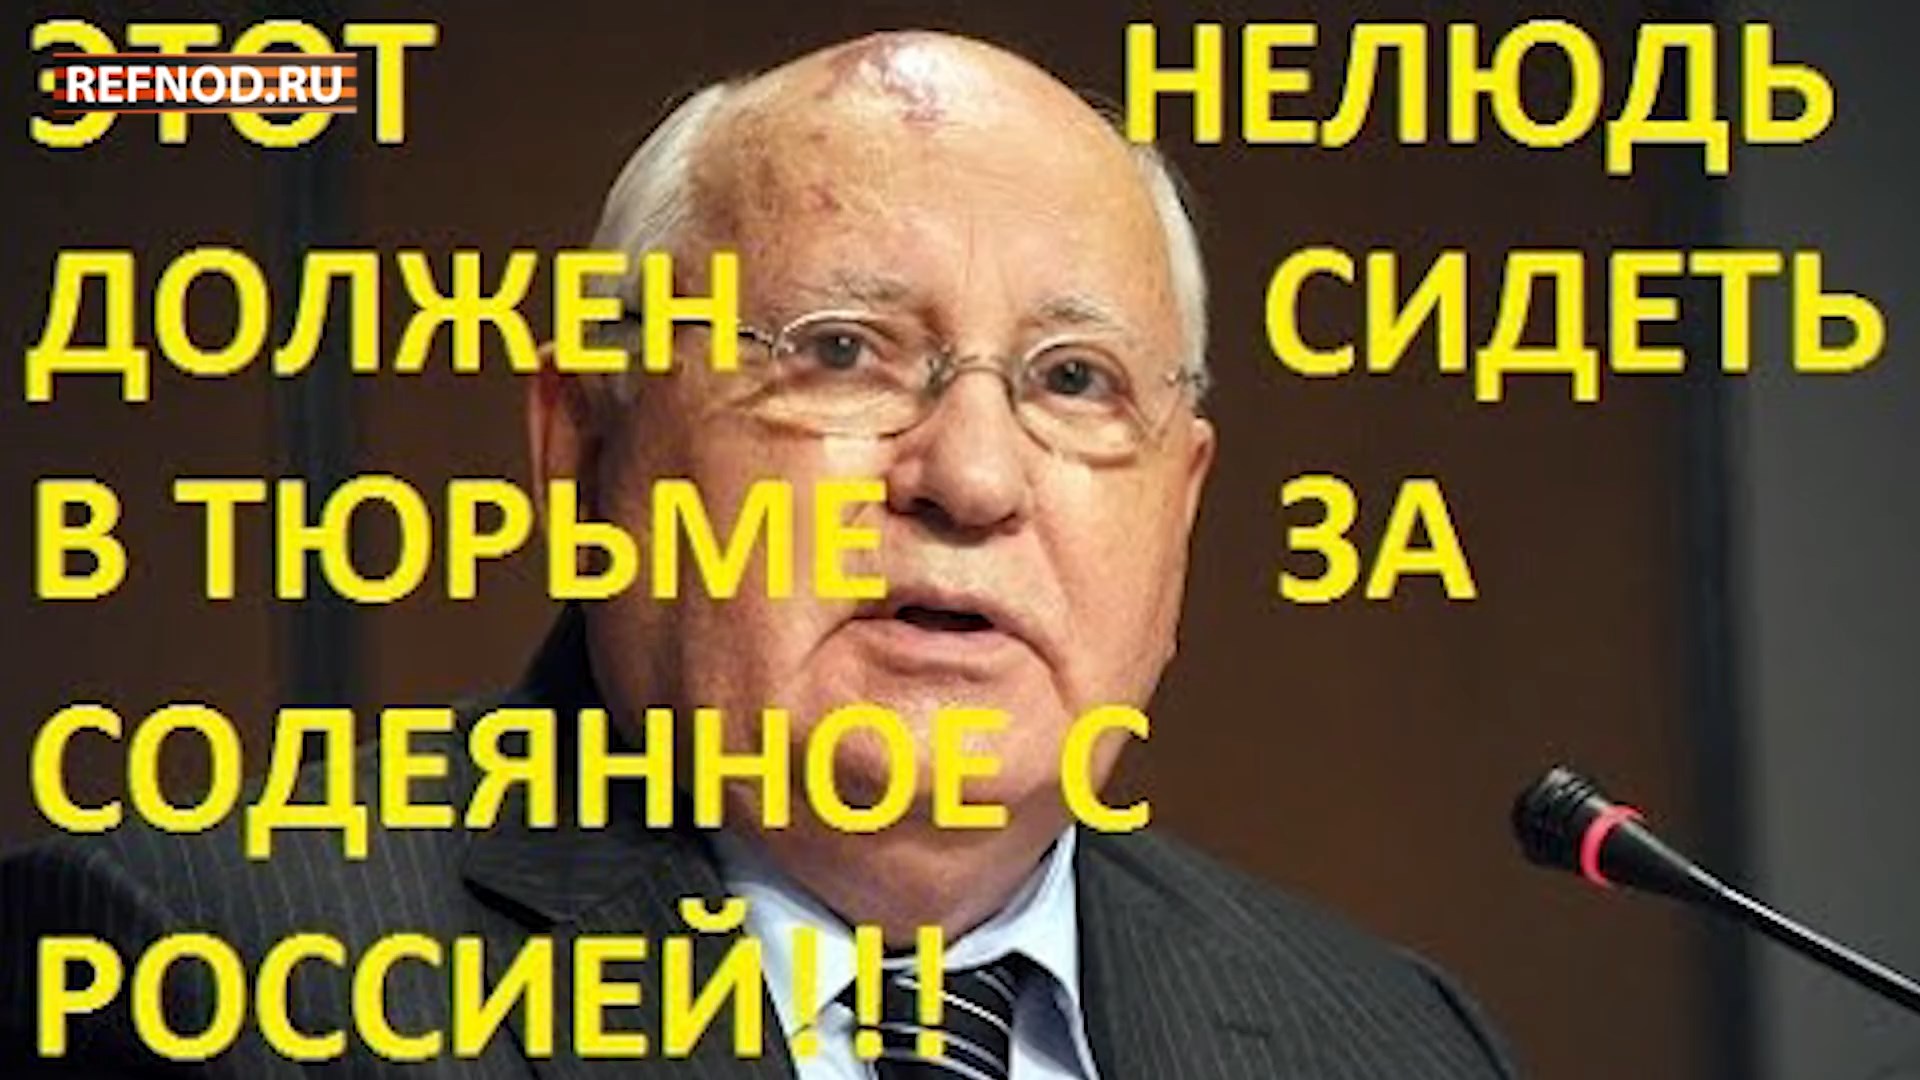 Горбачев - предатель! Такого предательства история не знает! Горбачева - под суд! REFNOD.RU НОД